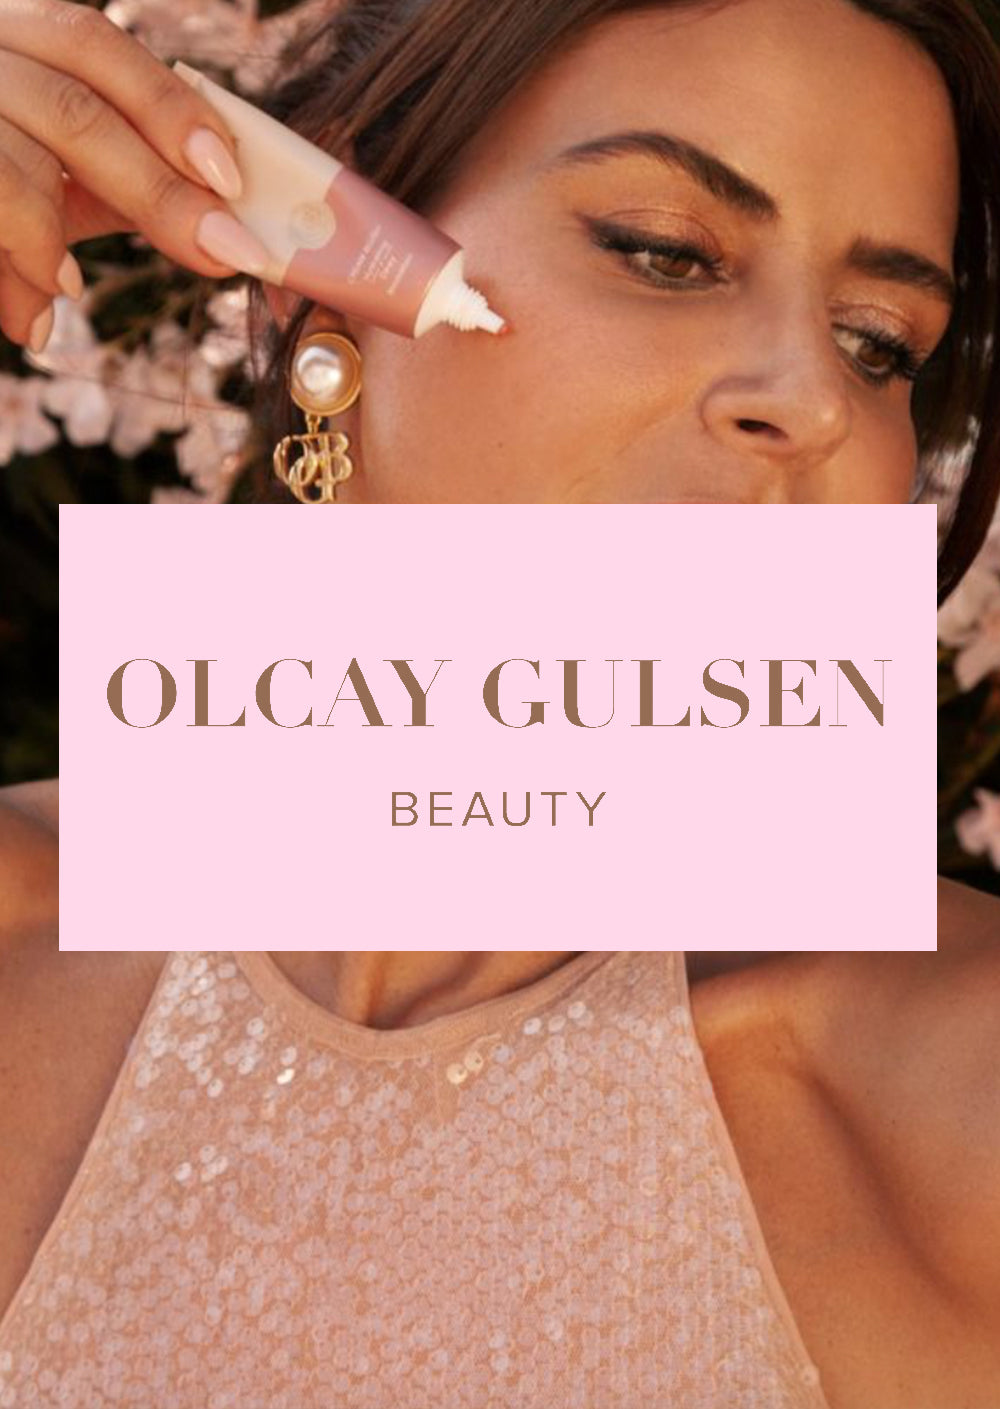 Olcay Gulsen Beauty